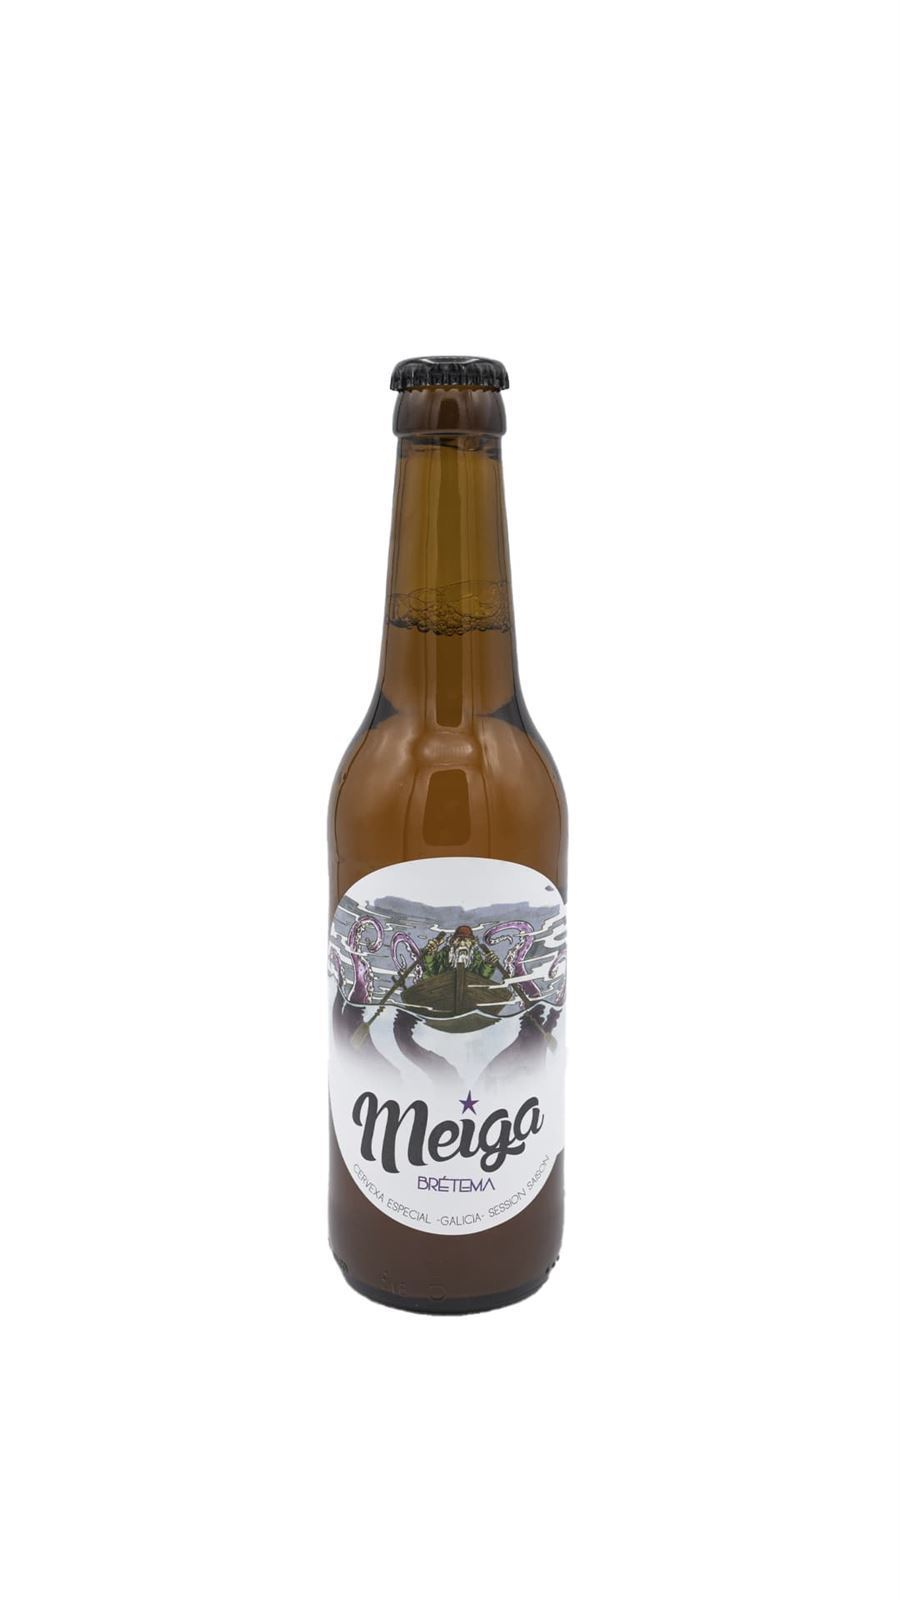 Cerveza Meiga Brétema - Imagen 1